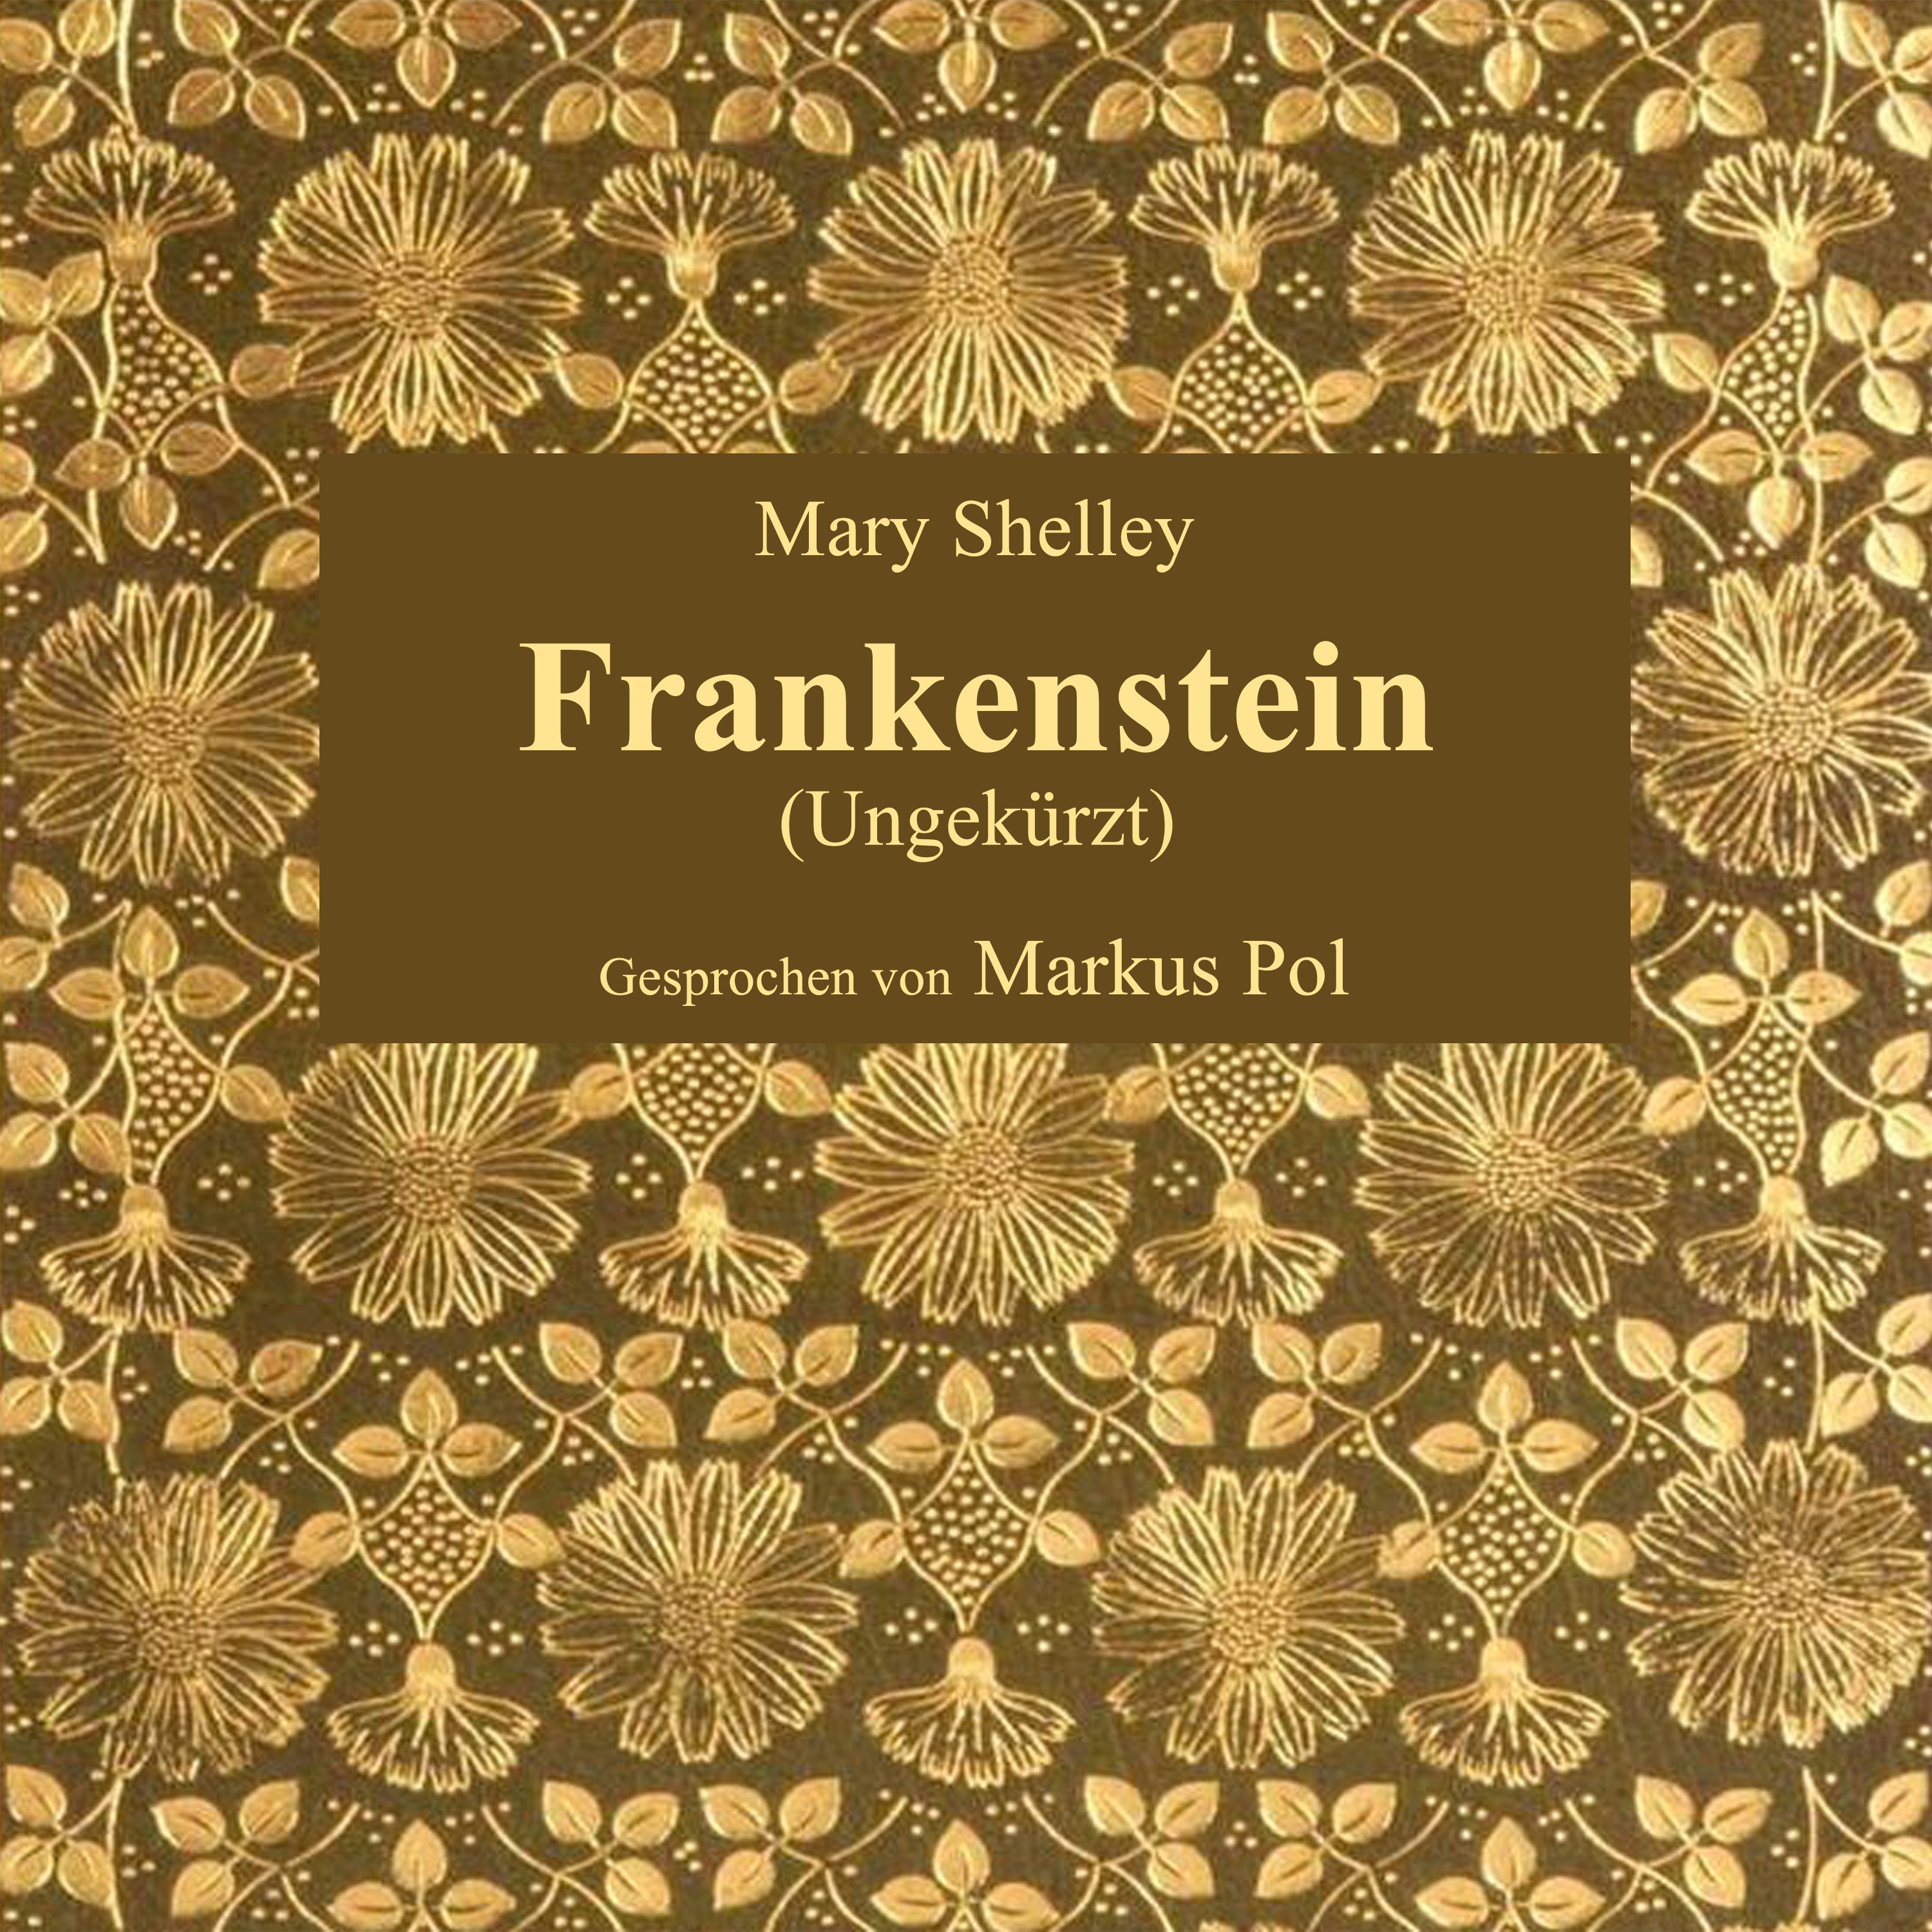 Kapitel 2: Frankenstein (Teil 17)